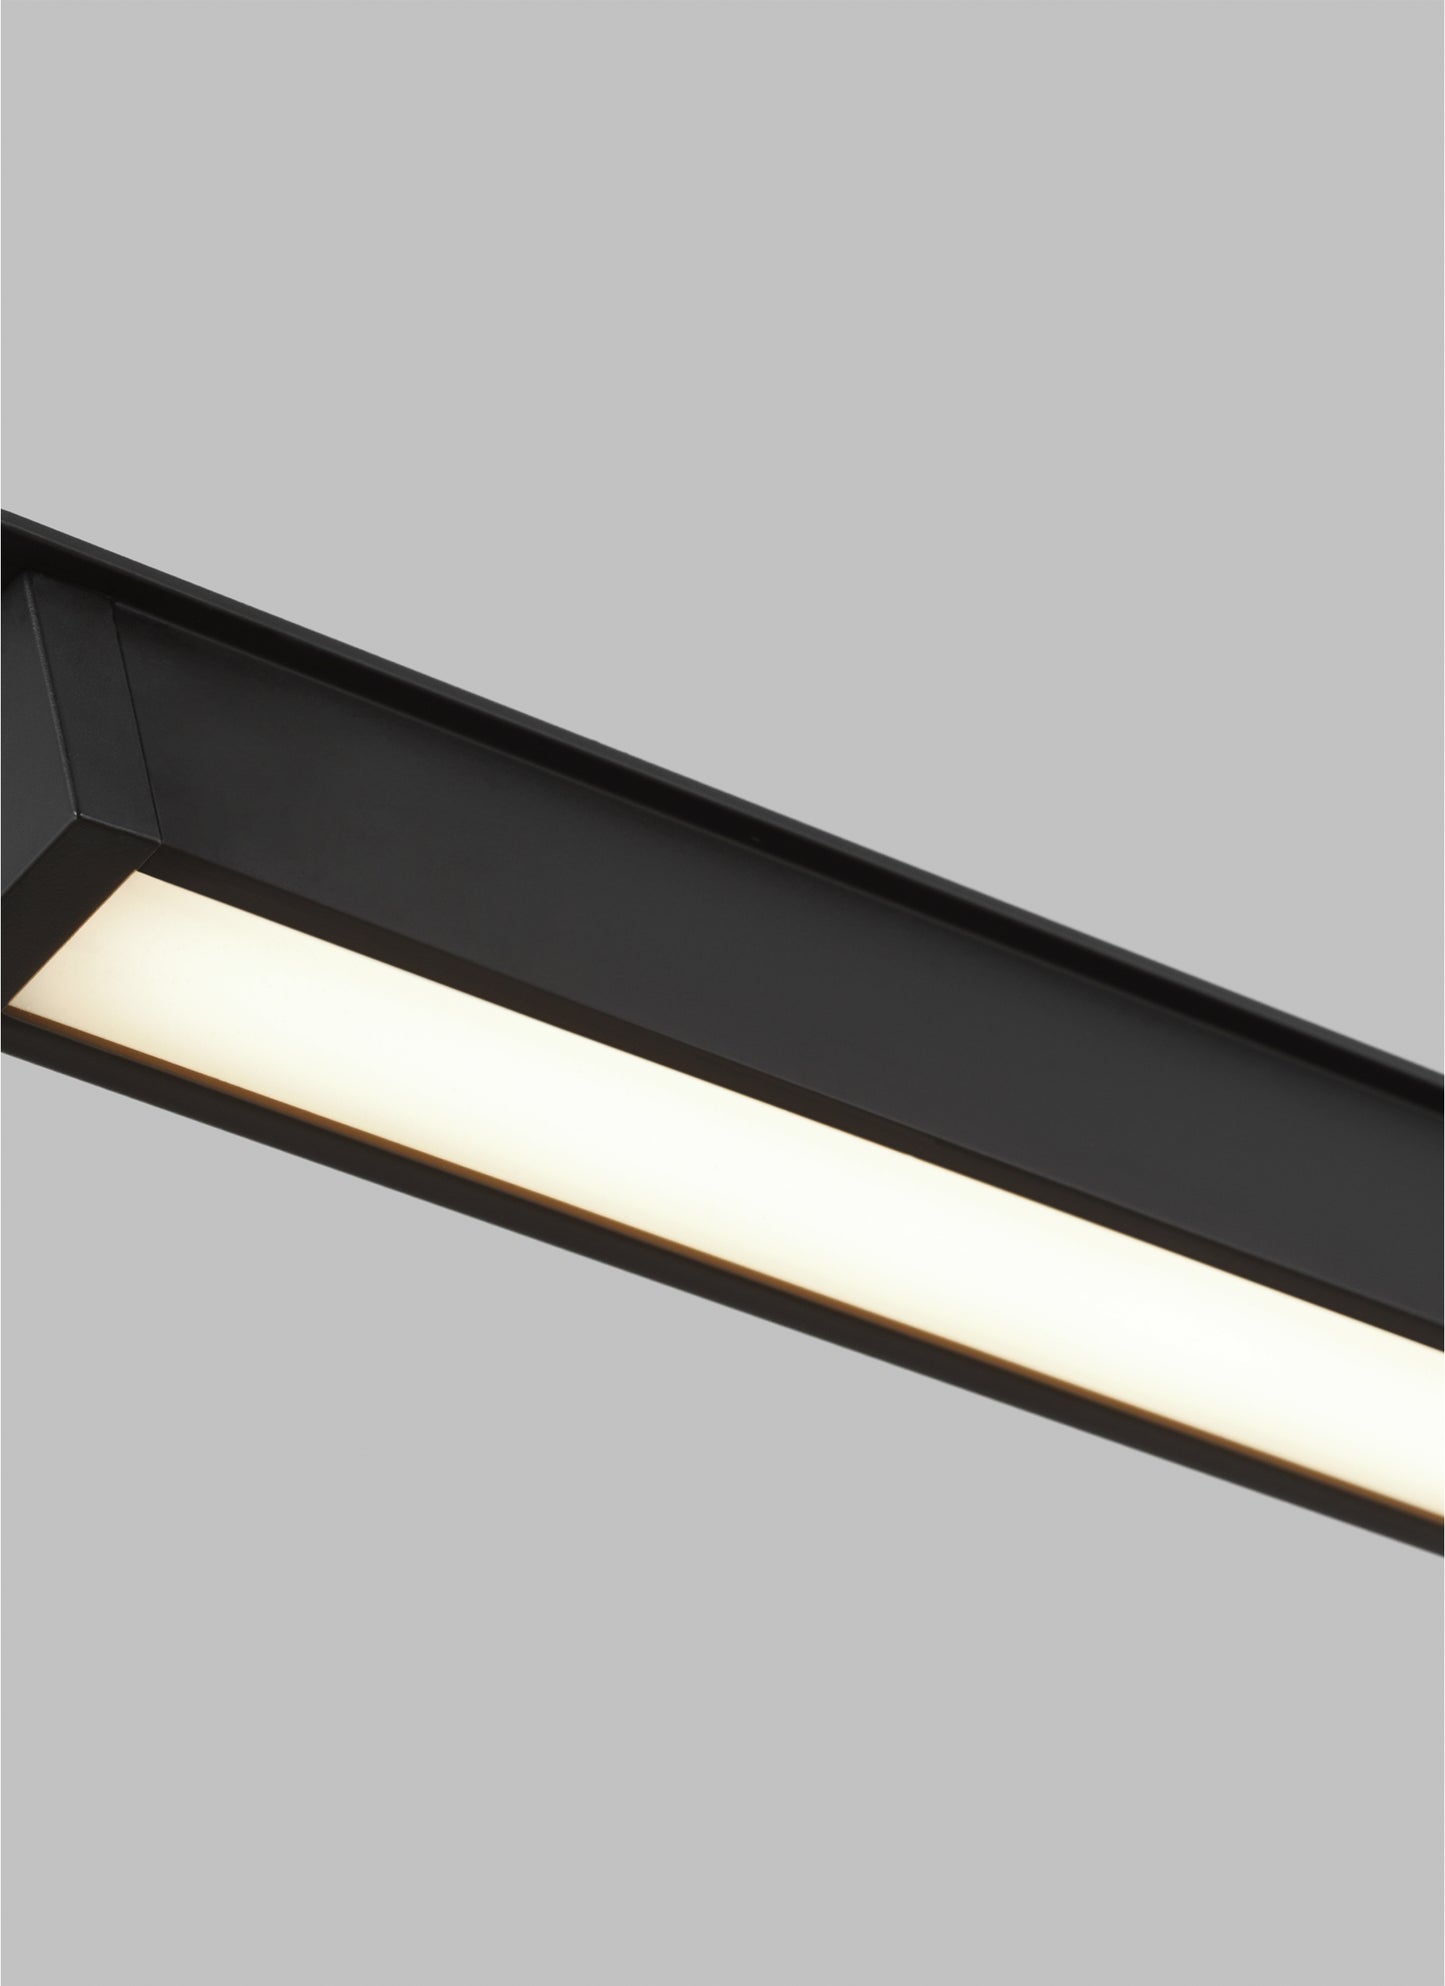 Stylish Interior Lighting - ETL Listed Commercial Light